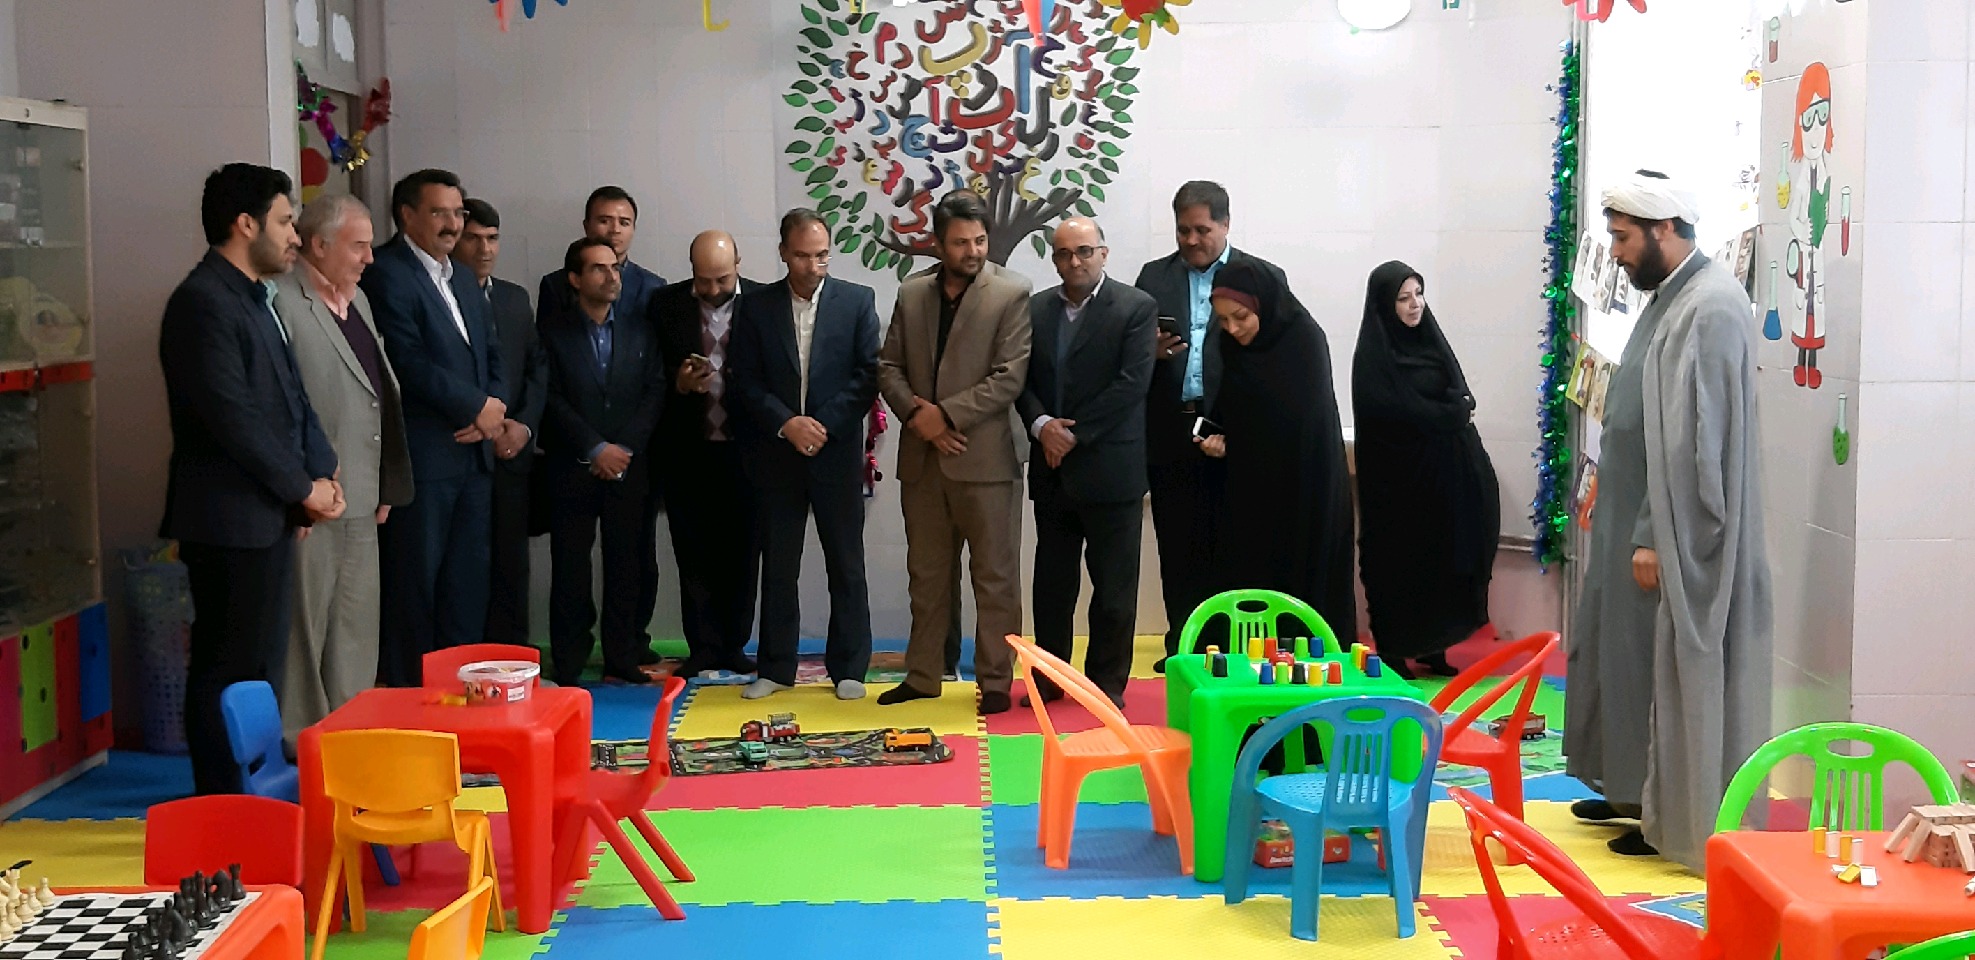 افتتاح اولین اتاق اسباب بازی در شهر جدید بینالود